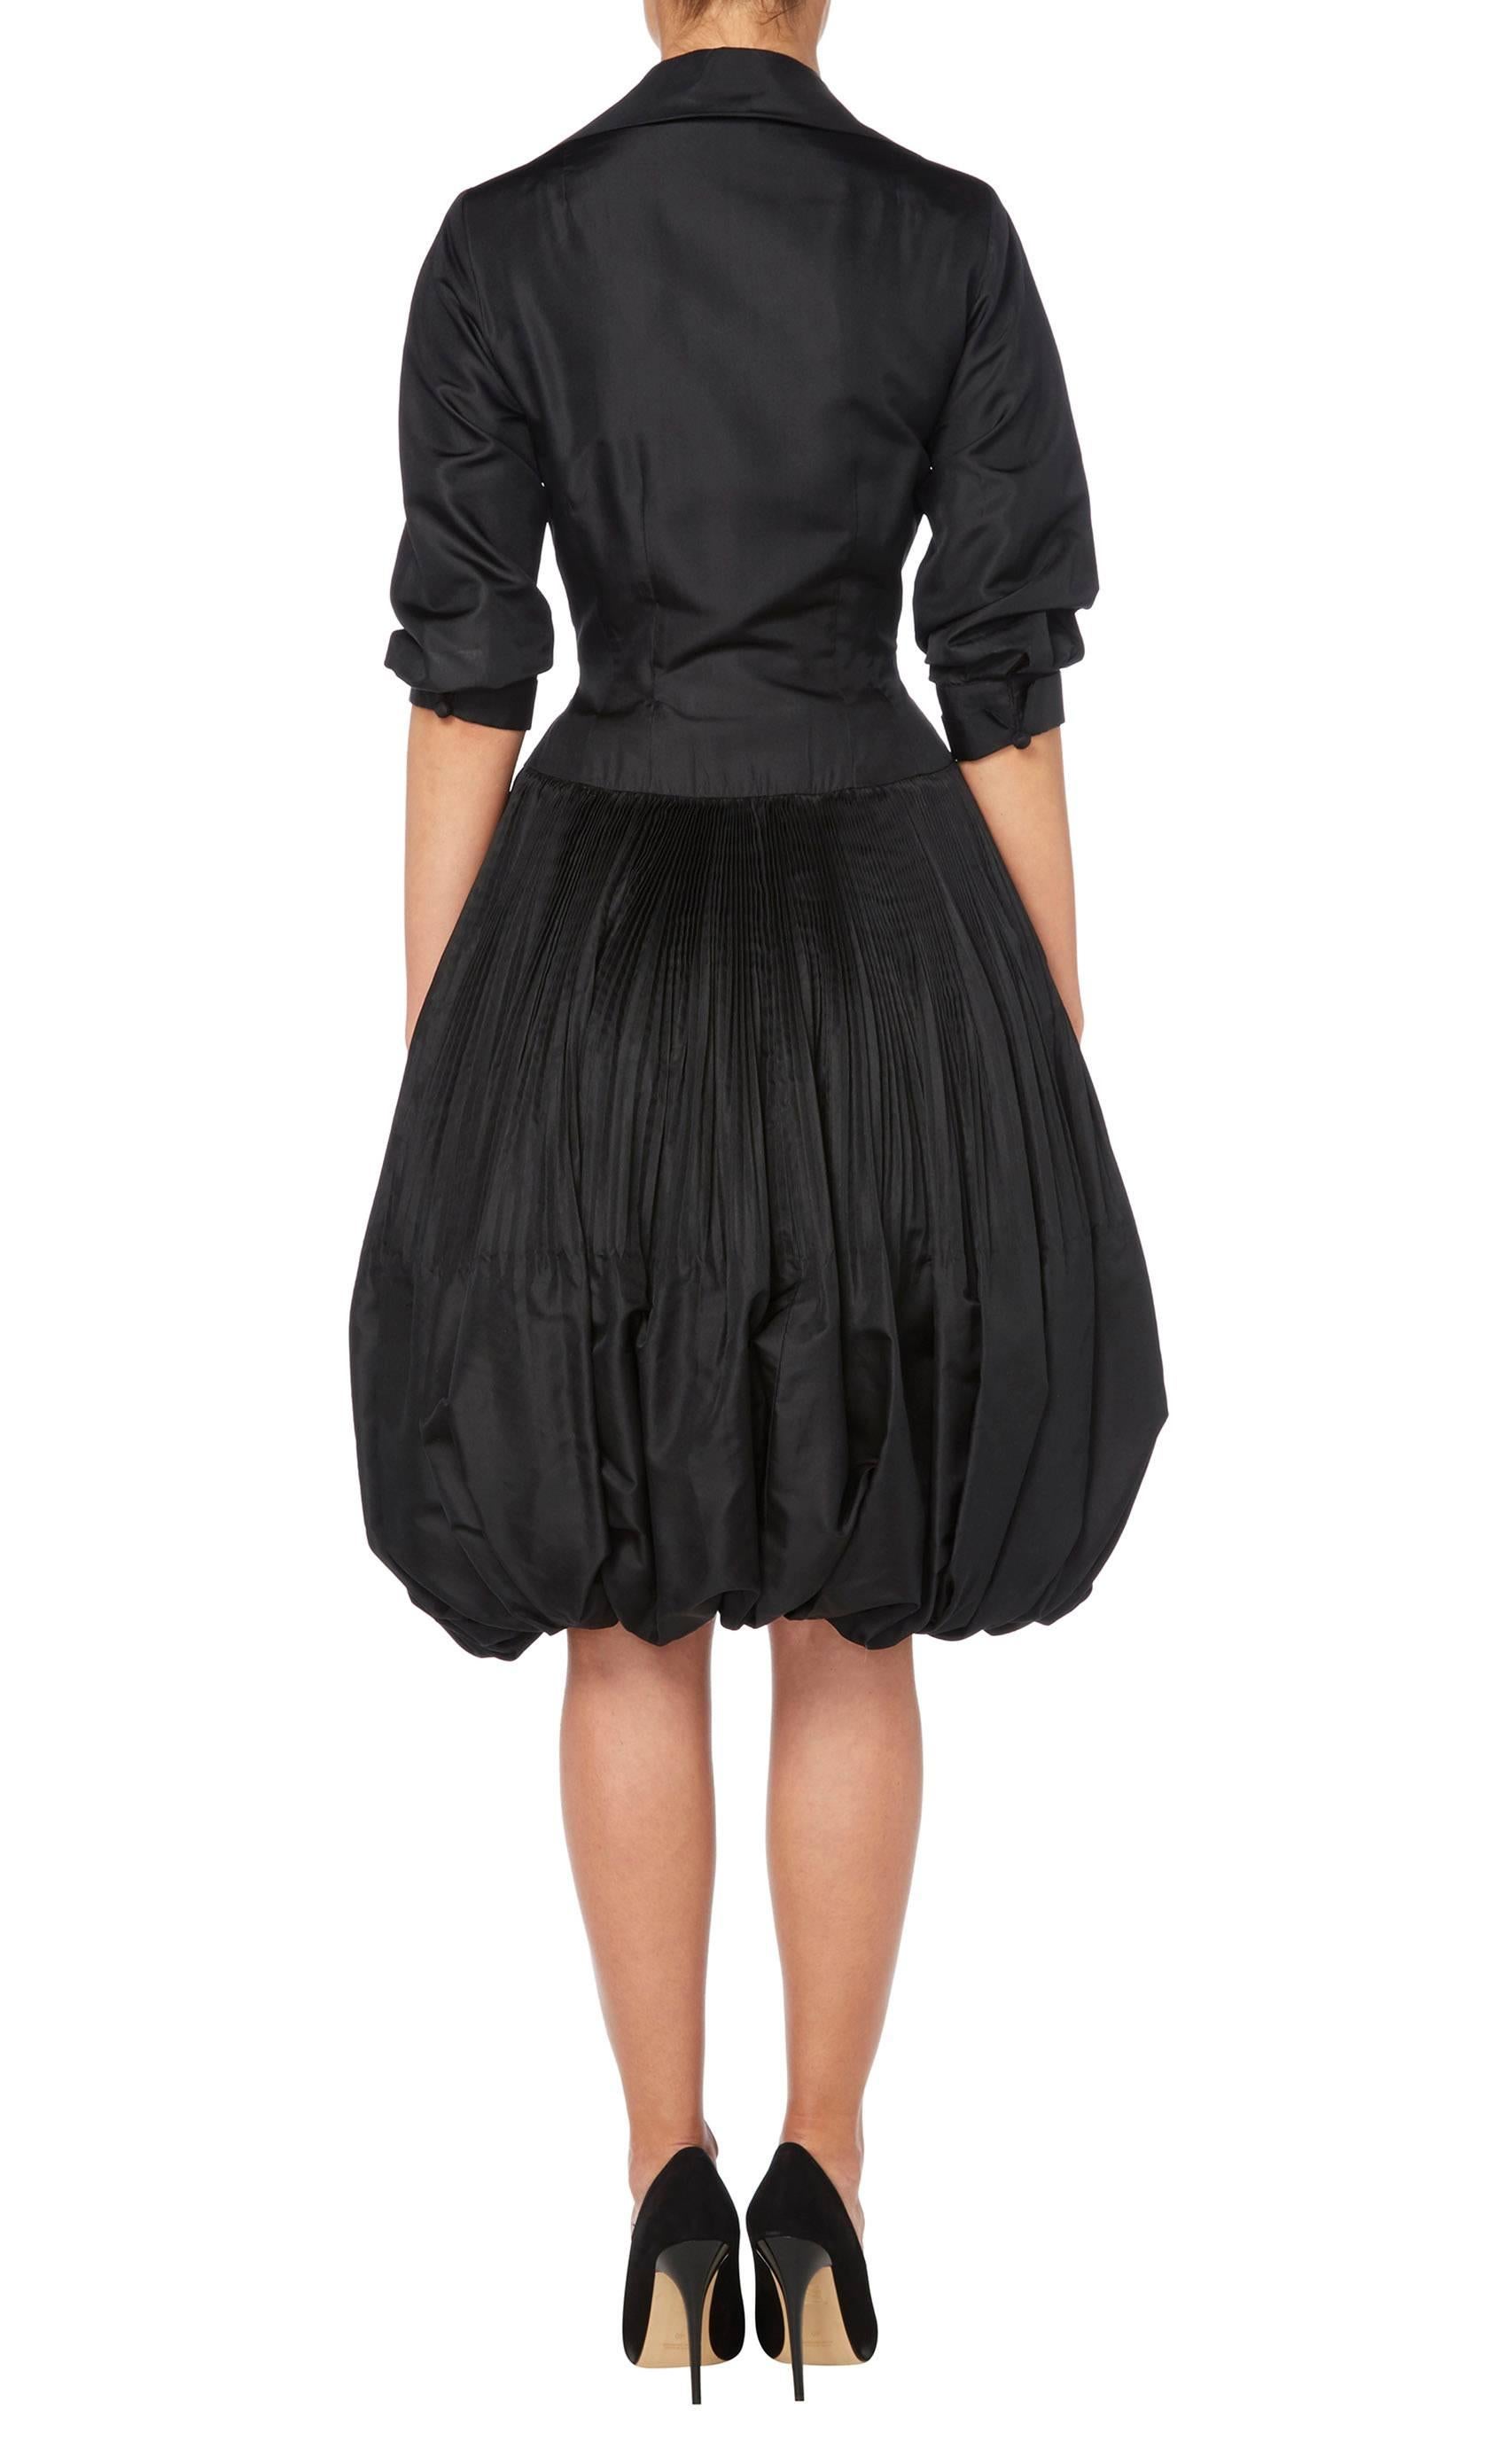 Black Seymour Jacobson black dress, circa 1958 For Sale